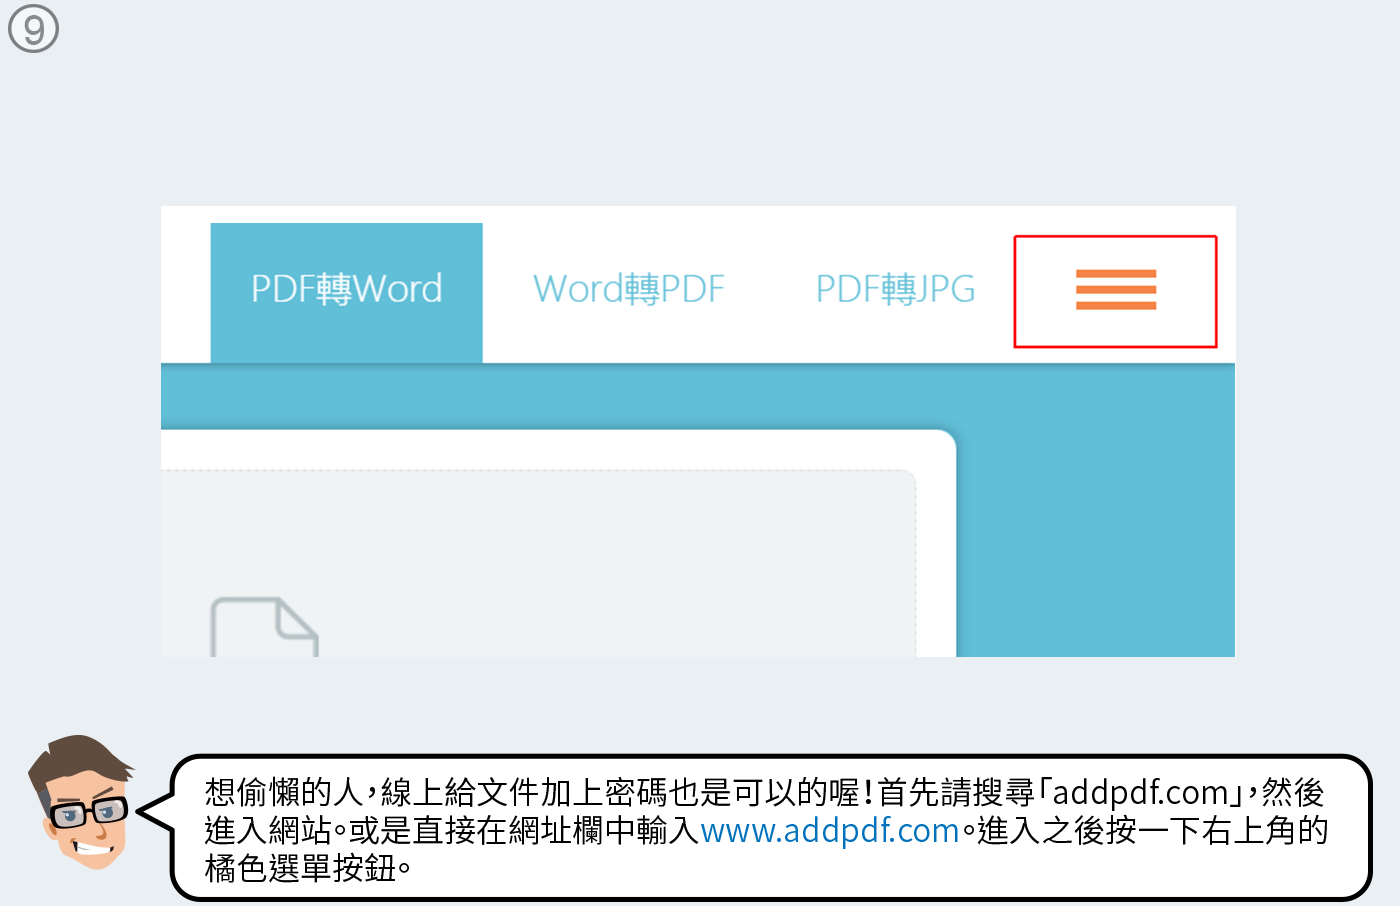 線上PDF加密碼服務「addpdf.com」